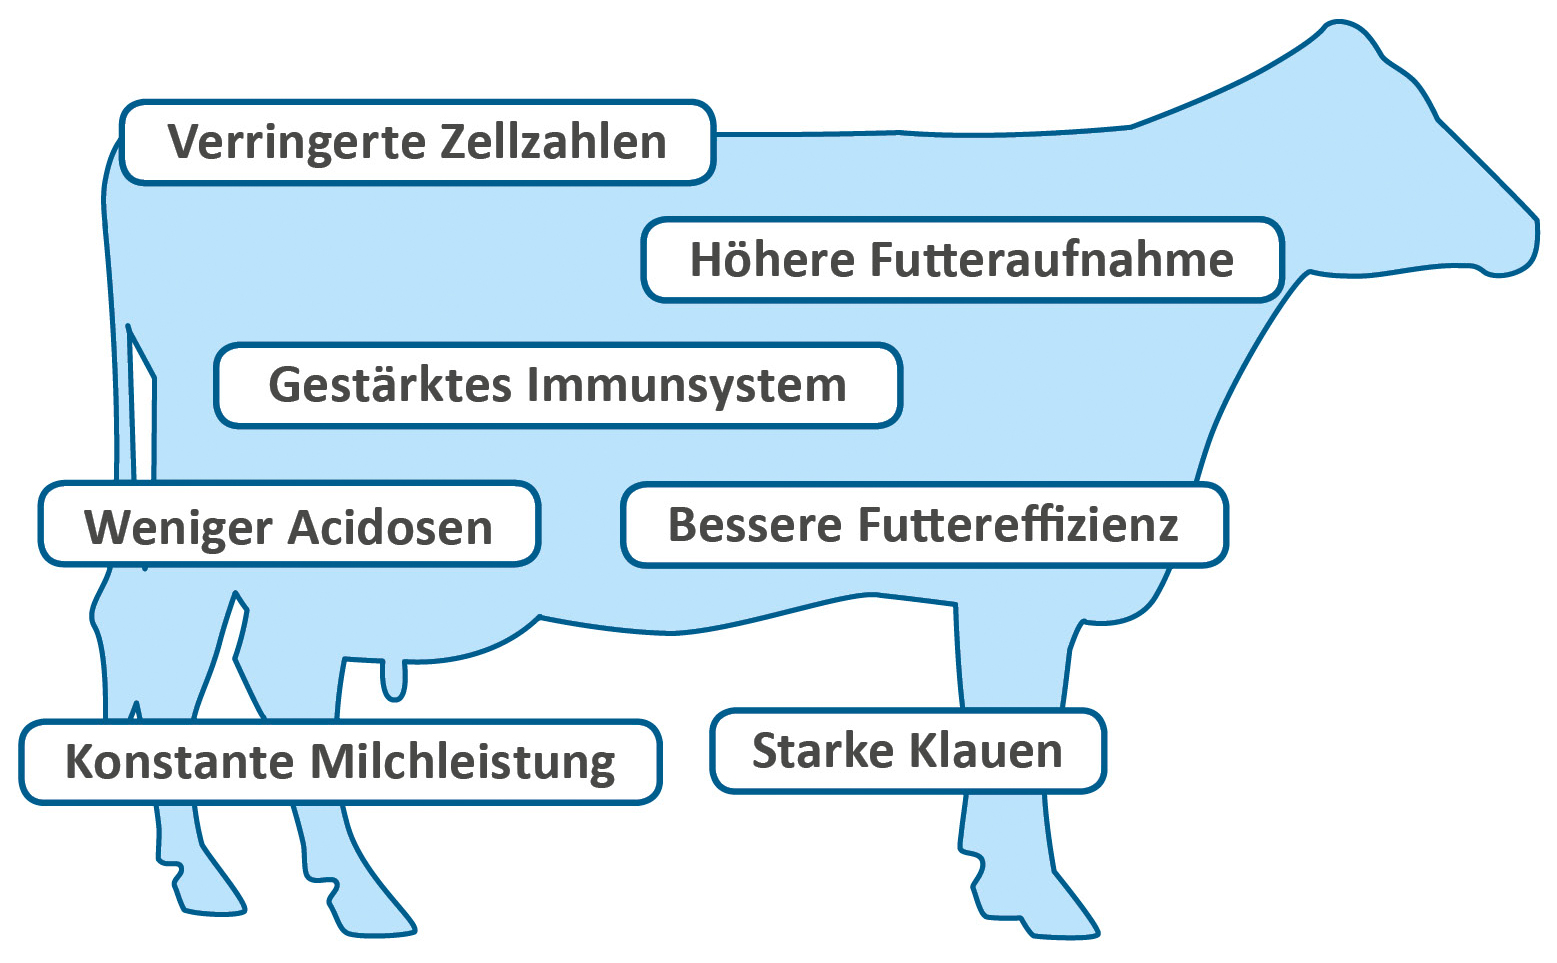 Rezultat potpore metabolizmu mliječne krave